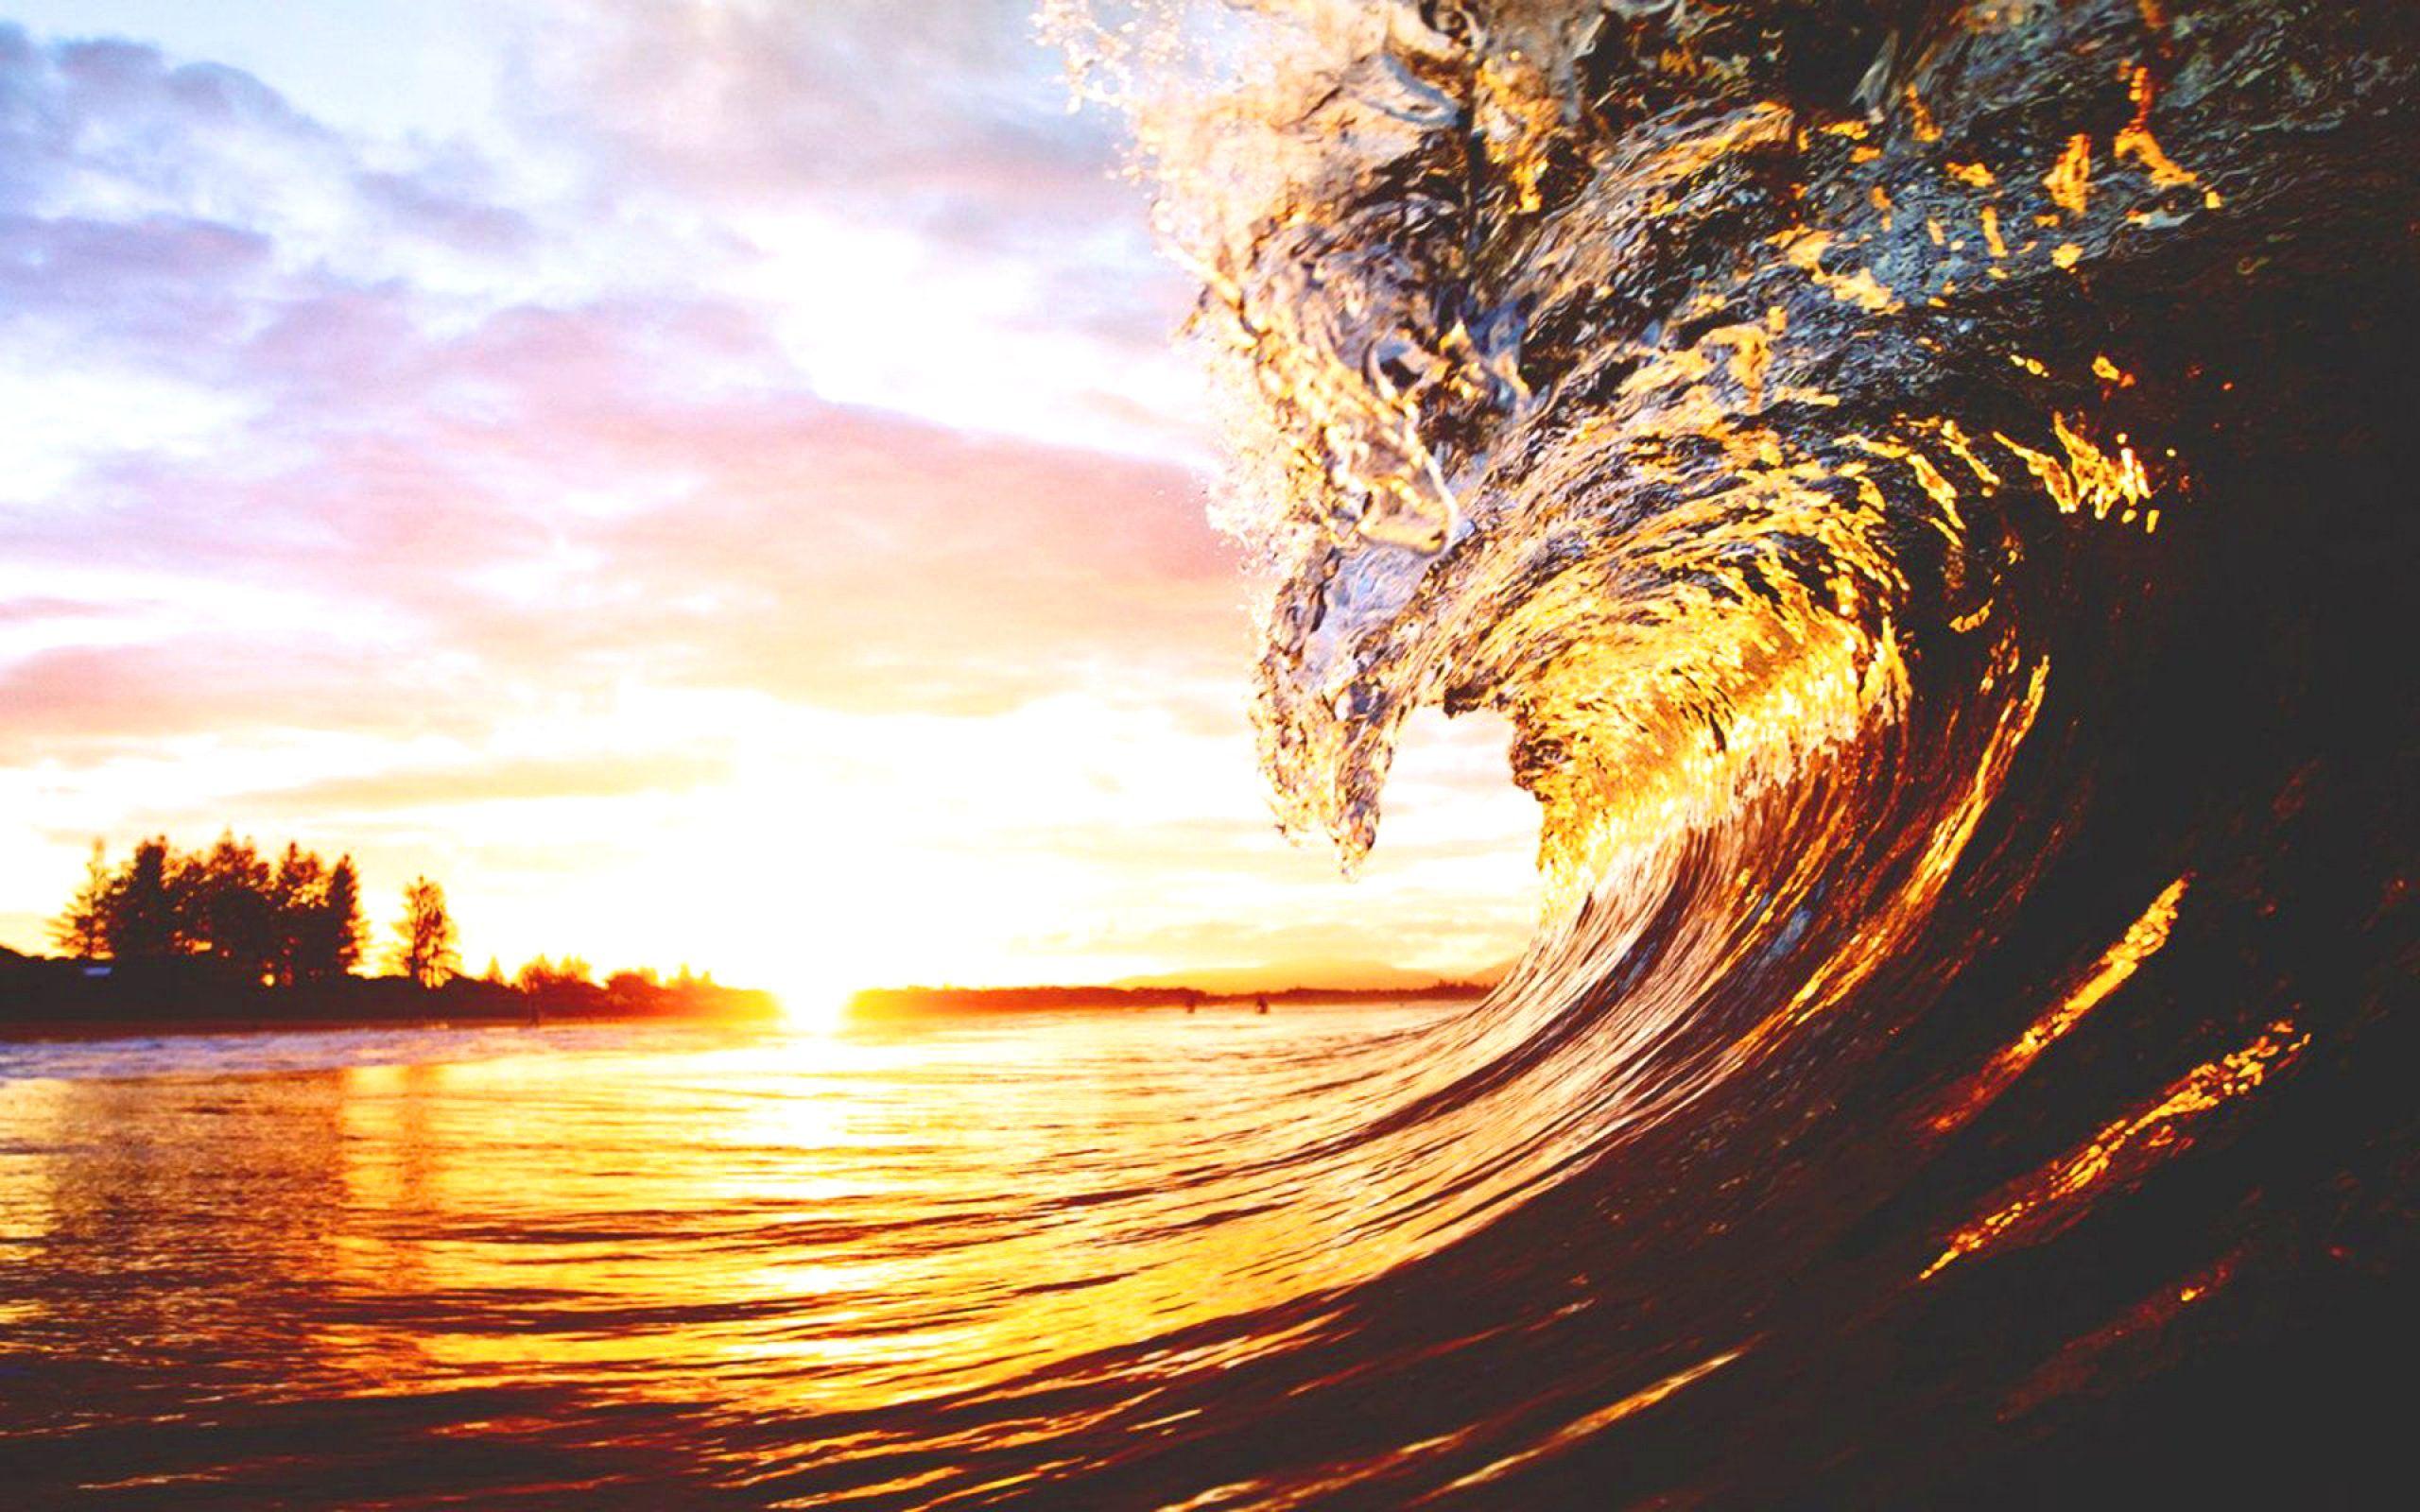 Ocean Wave Hi Rise Image. Beautiful image HD Picture & Desktop